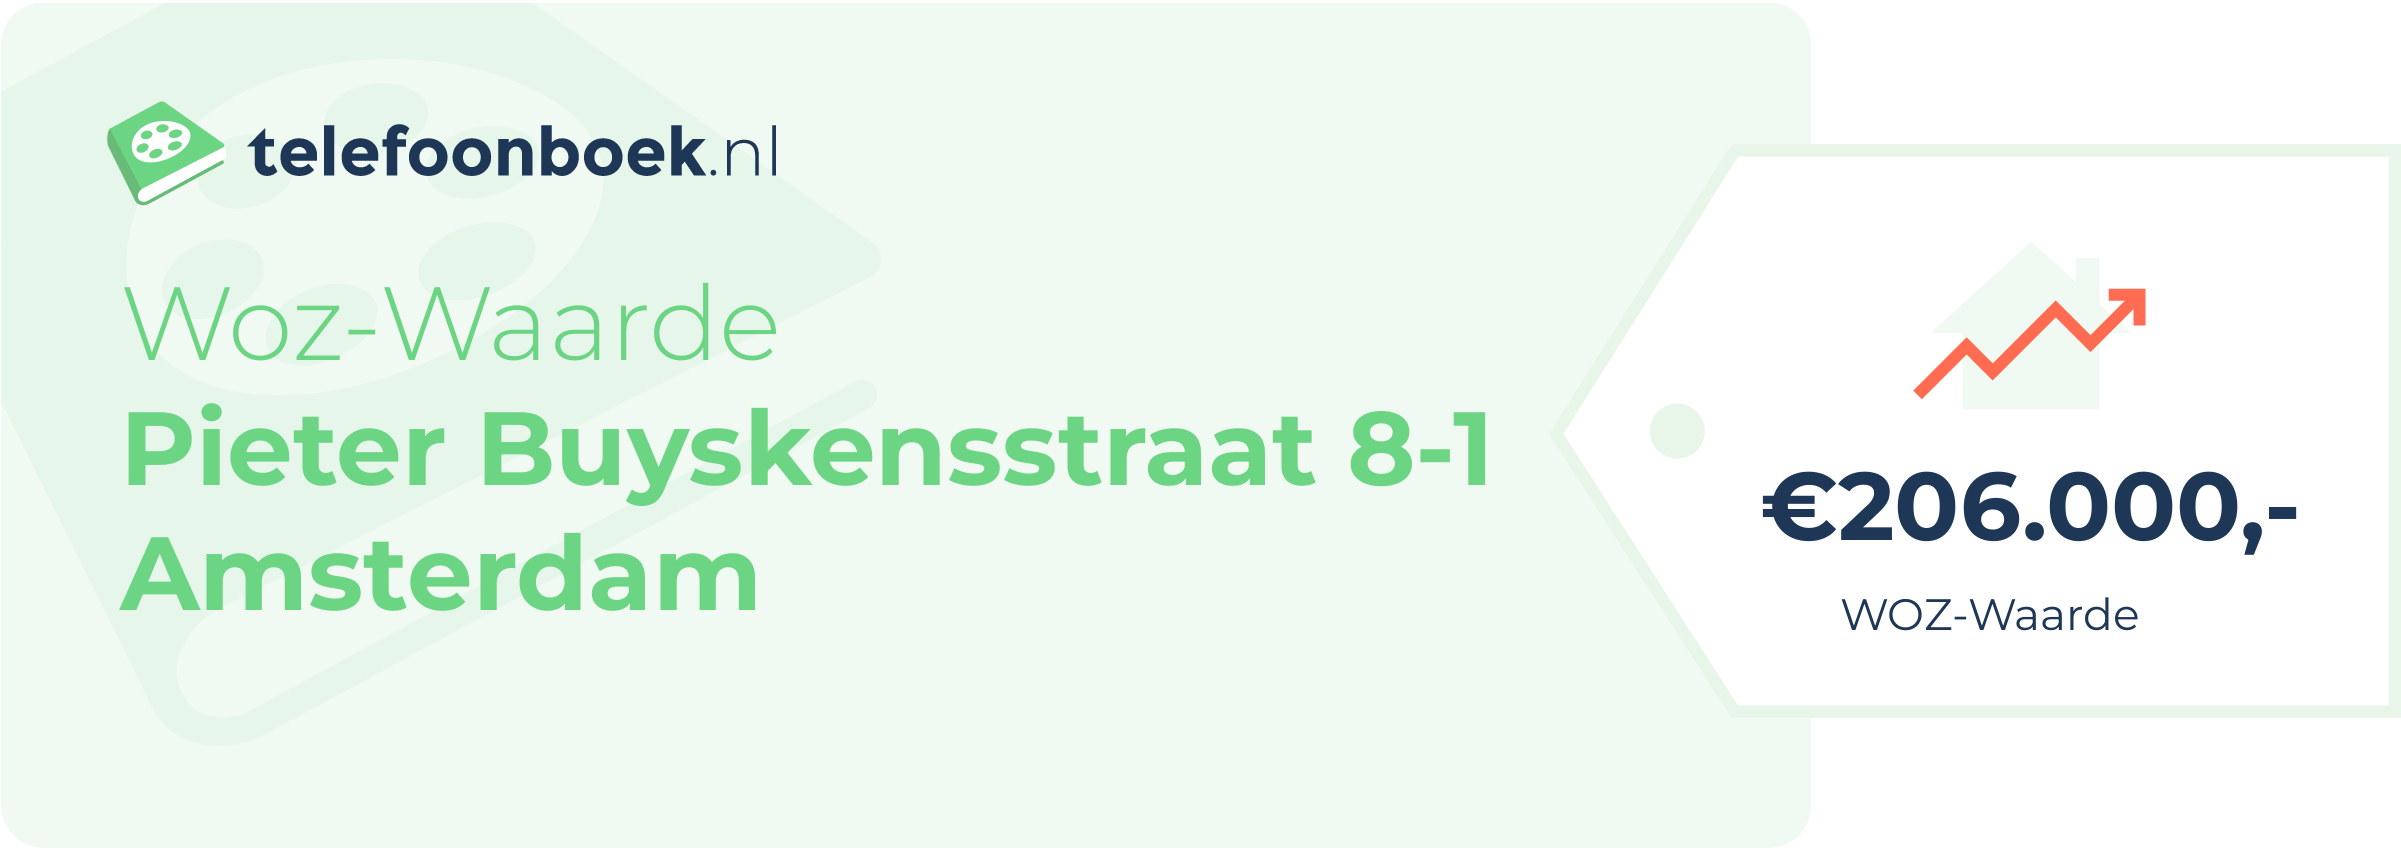 WOZ-waarde Pieter Buyskensstraat 8-1 Amsterdam